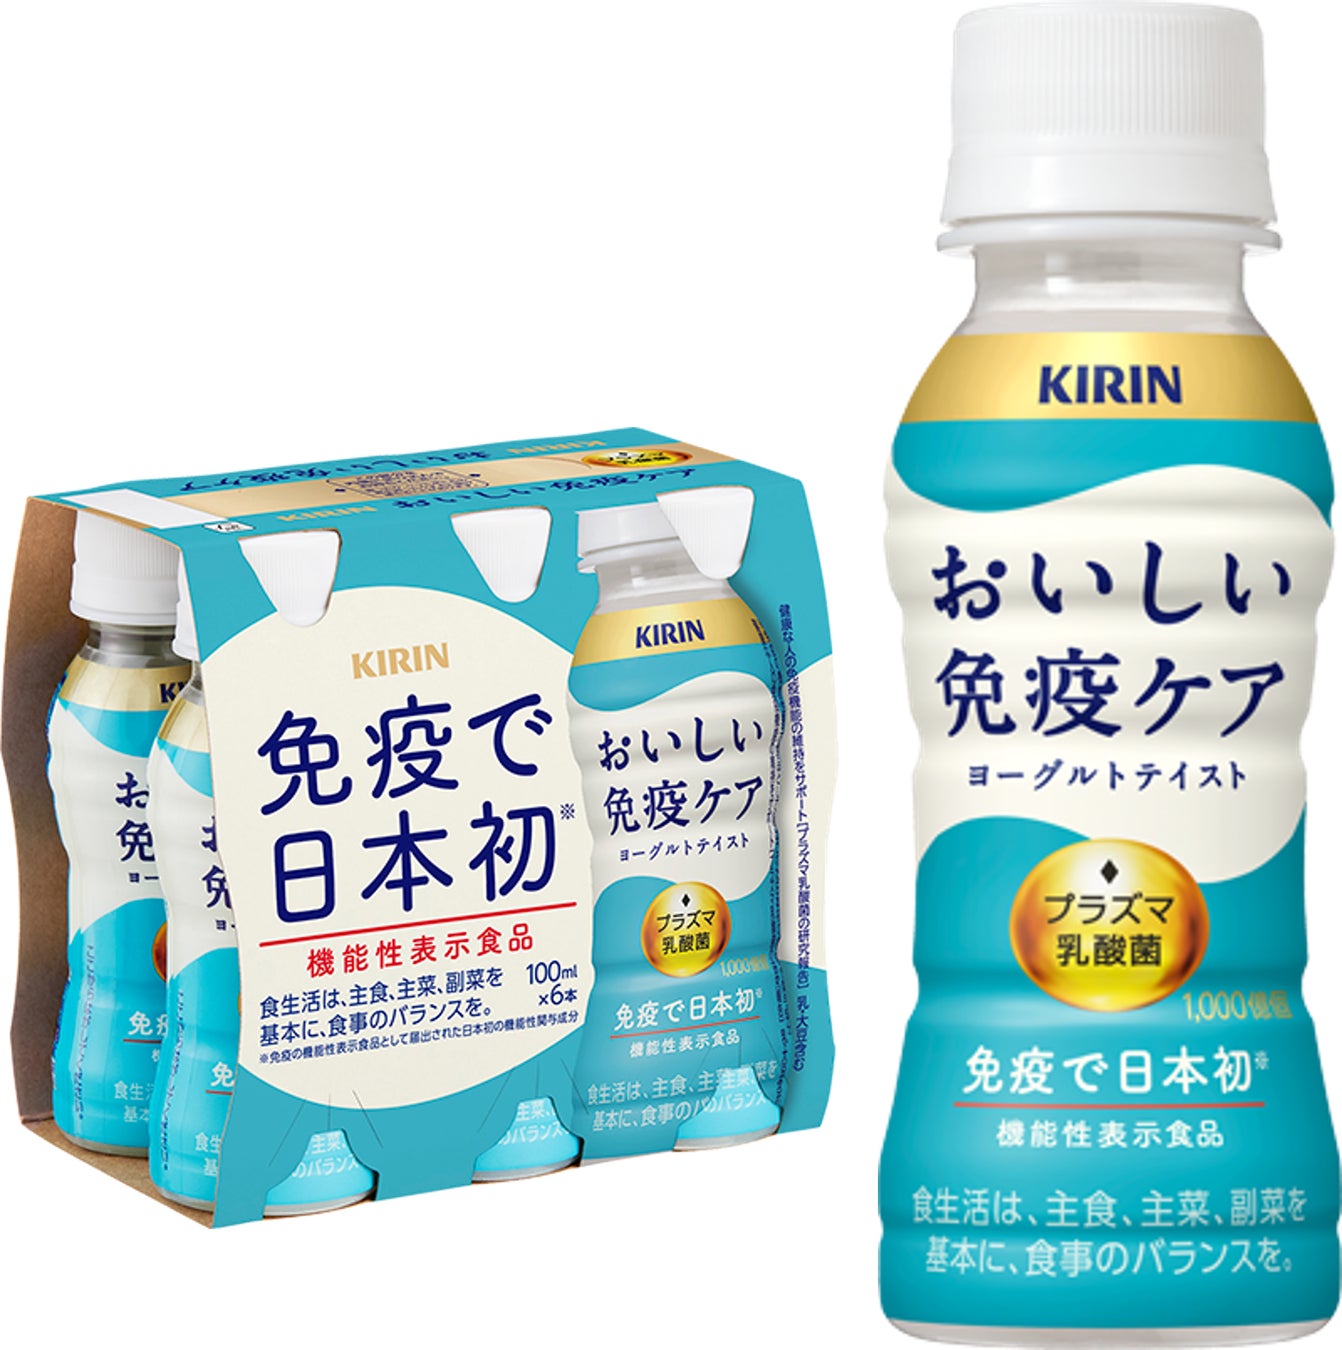 「キリン 午後の紅茶 おいしい無糖 ミルクティー」を3月7日（火）より新発売